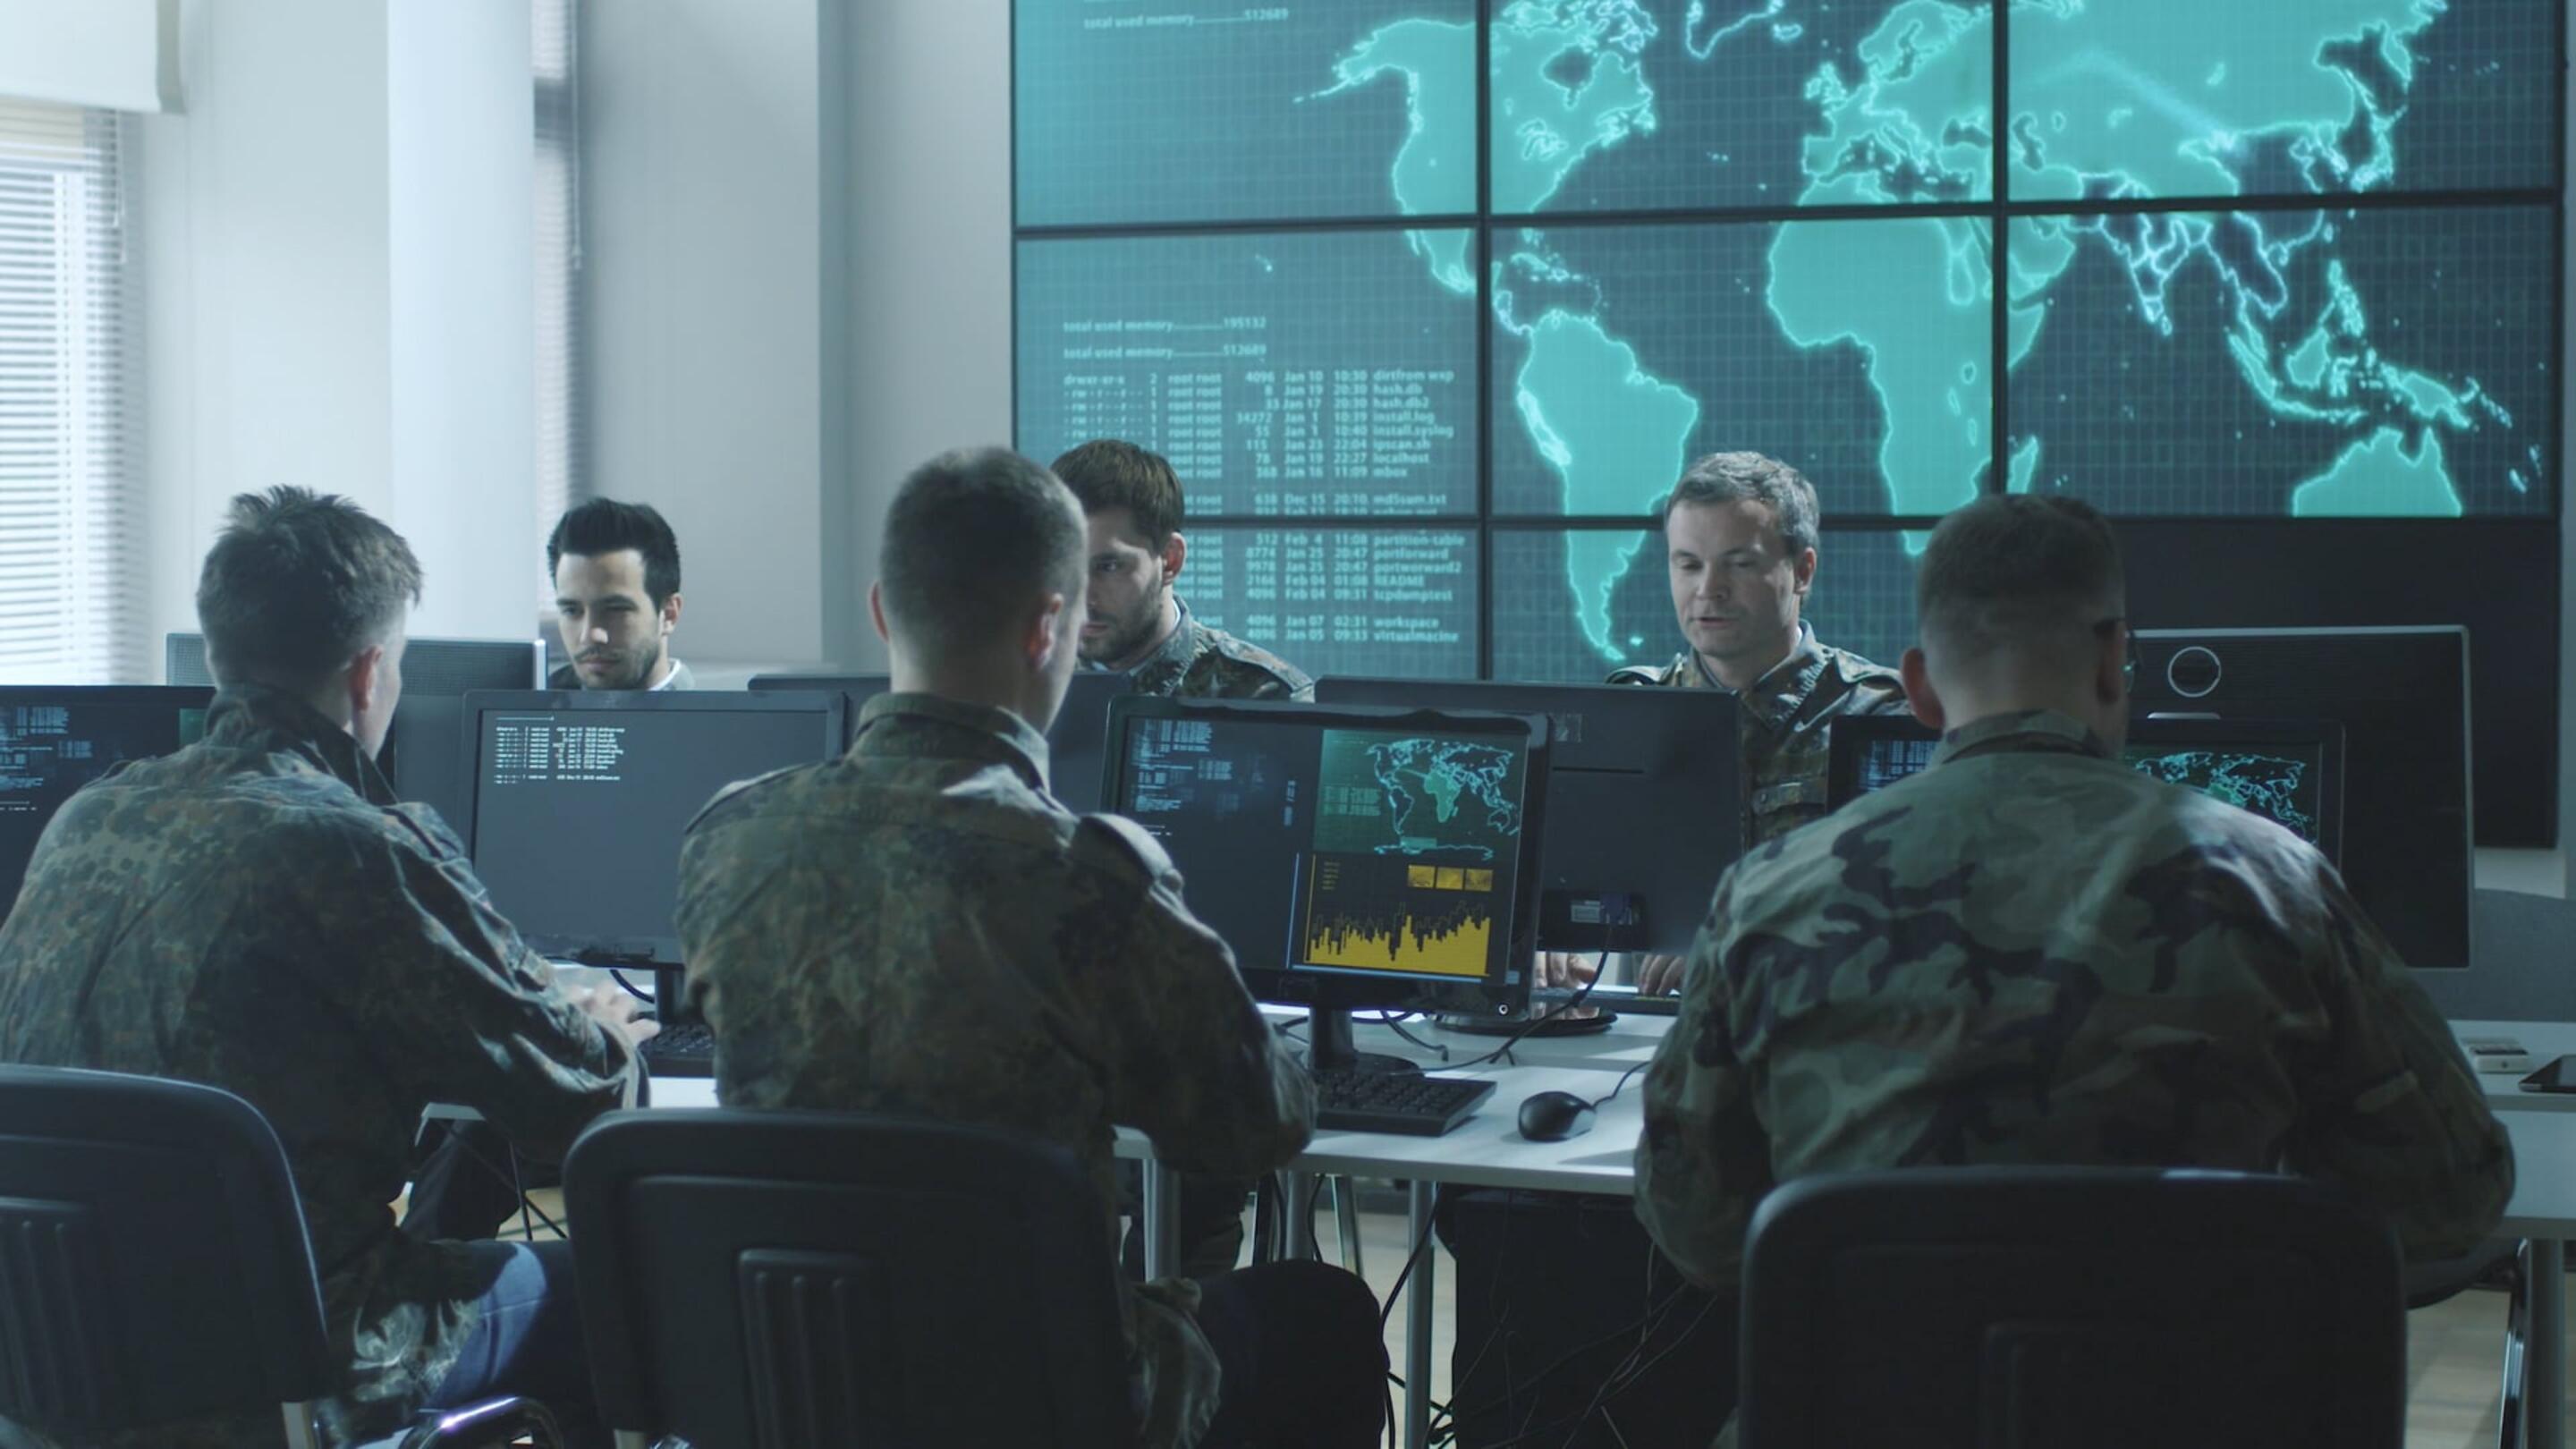 Tempest - Tempest skupino moških v vojaških uniformah, ki sedijo za računalniki